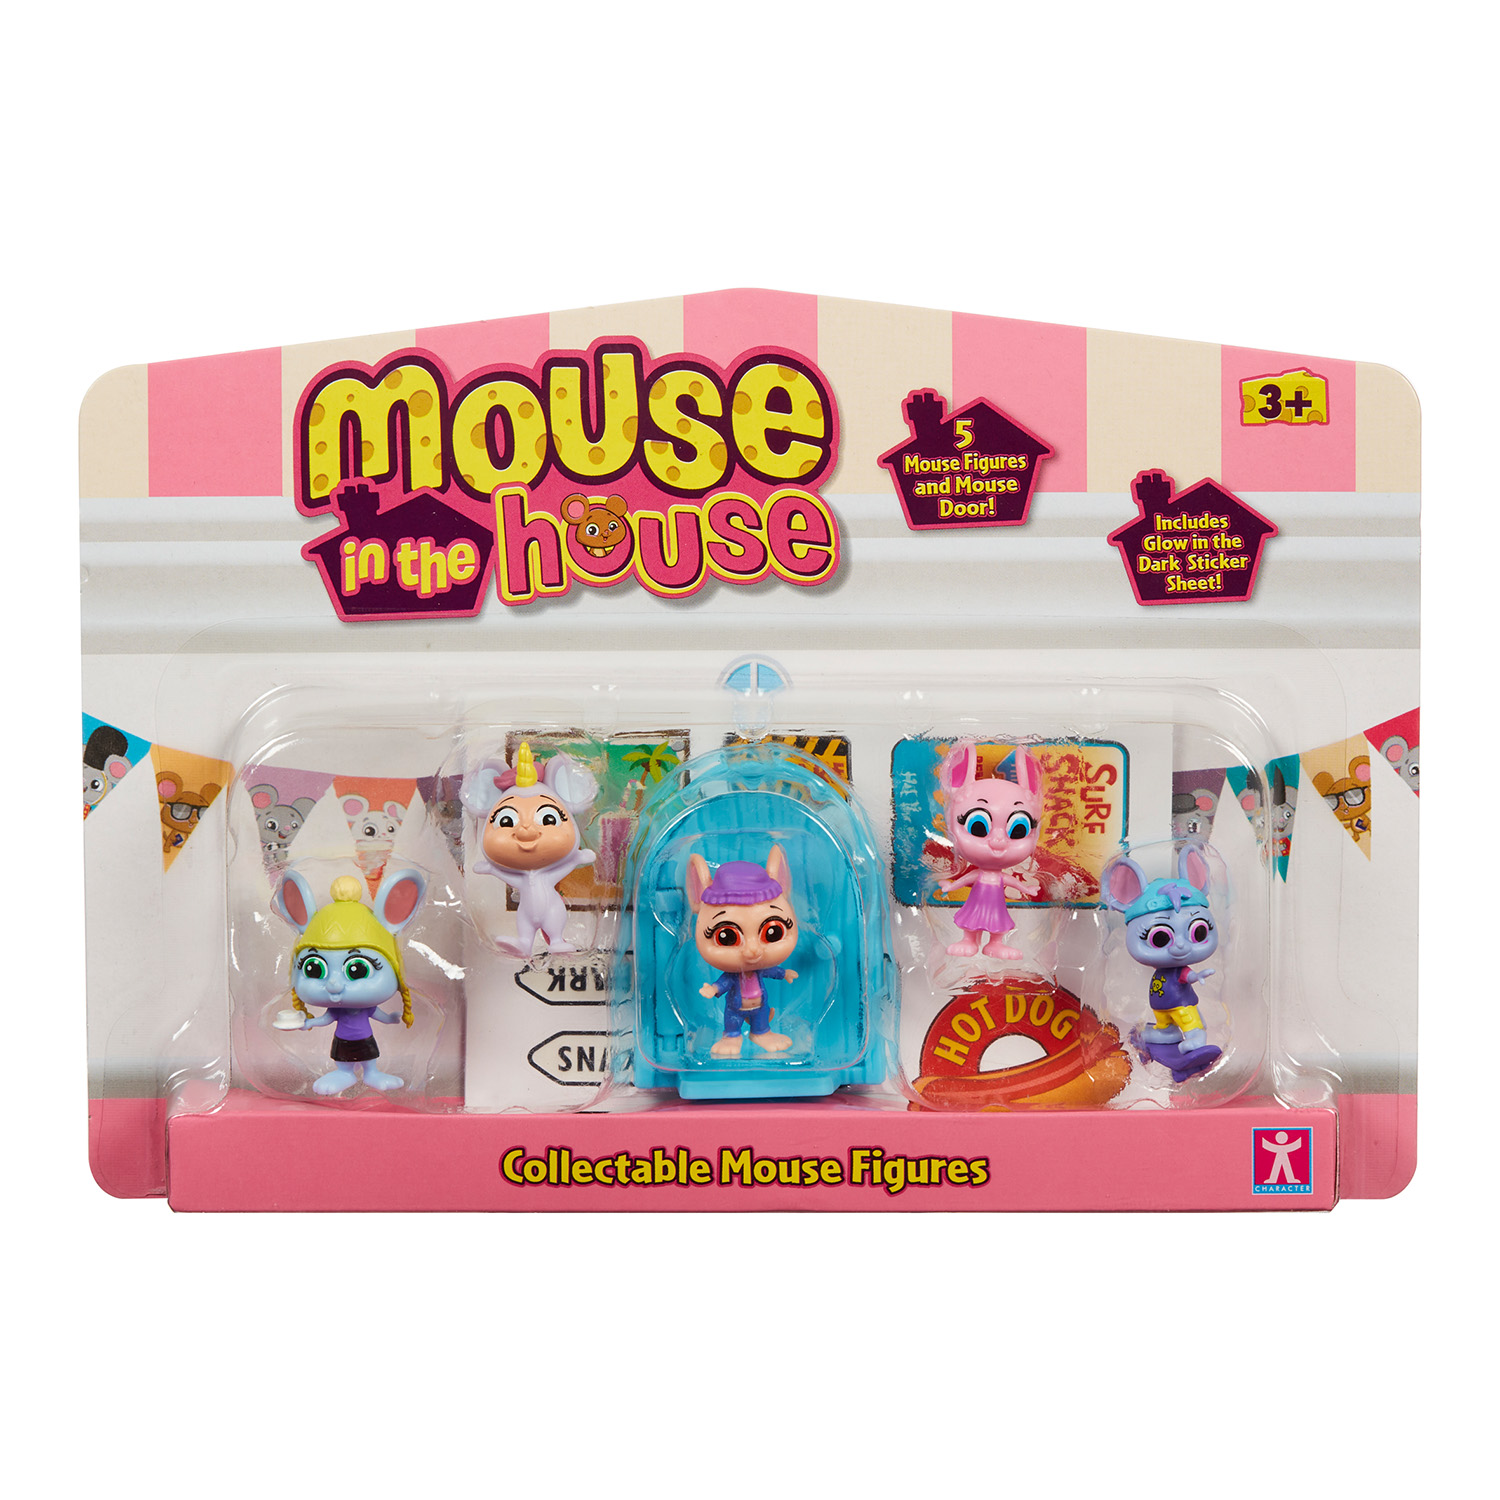 Игровой набор 5в1 фигурки Милли и мышки Mouse in the House, Синий 41725 милли водович корона